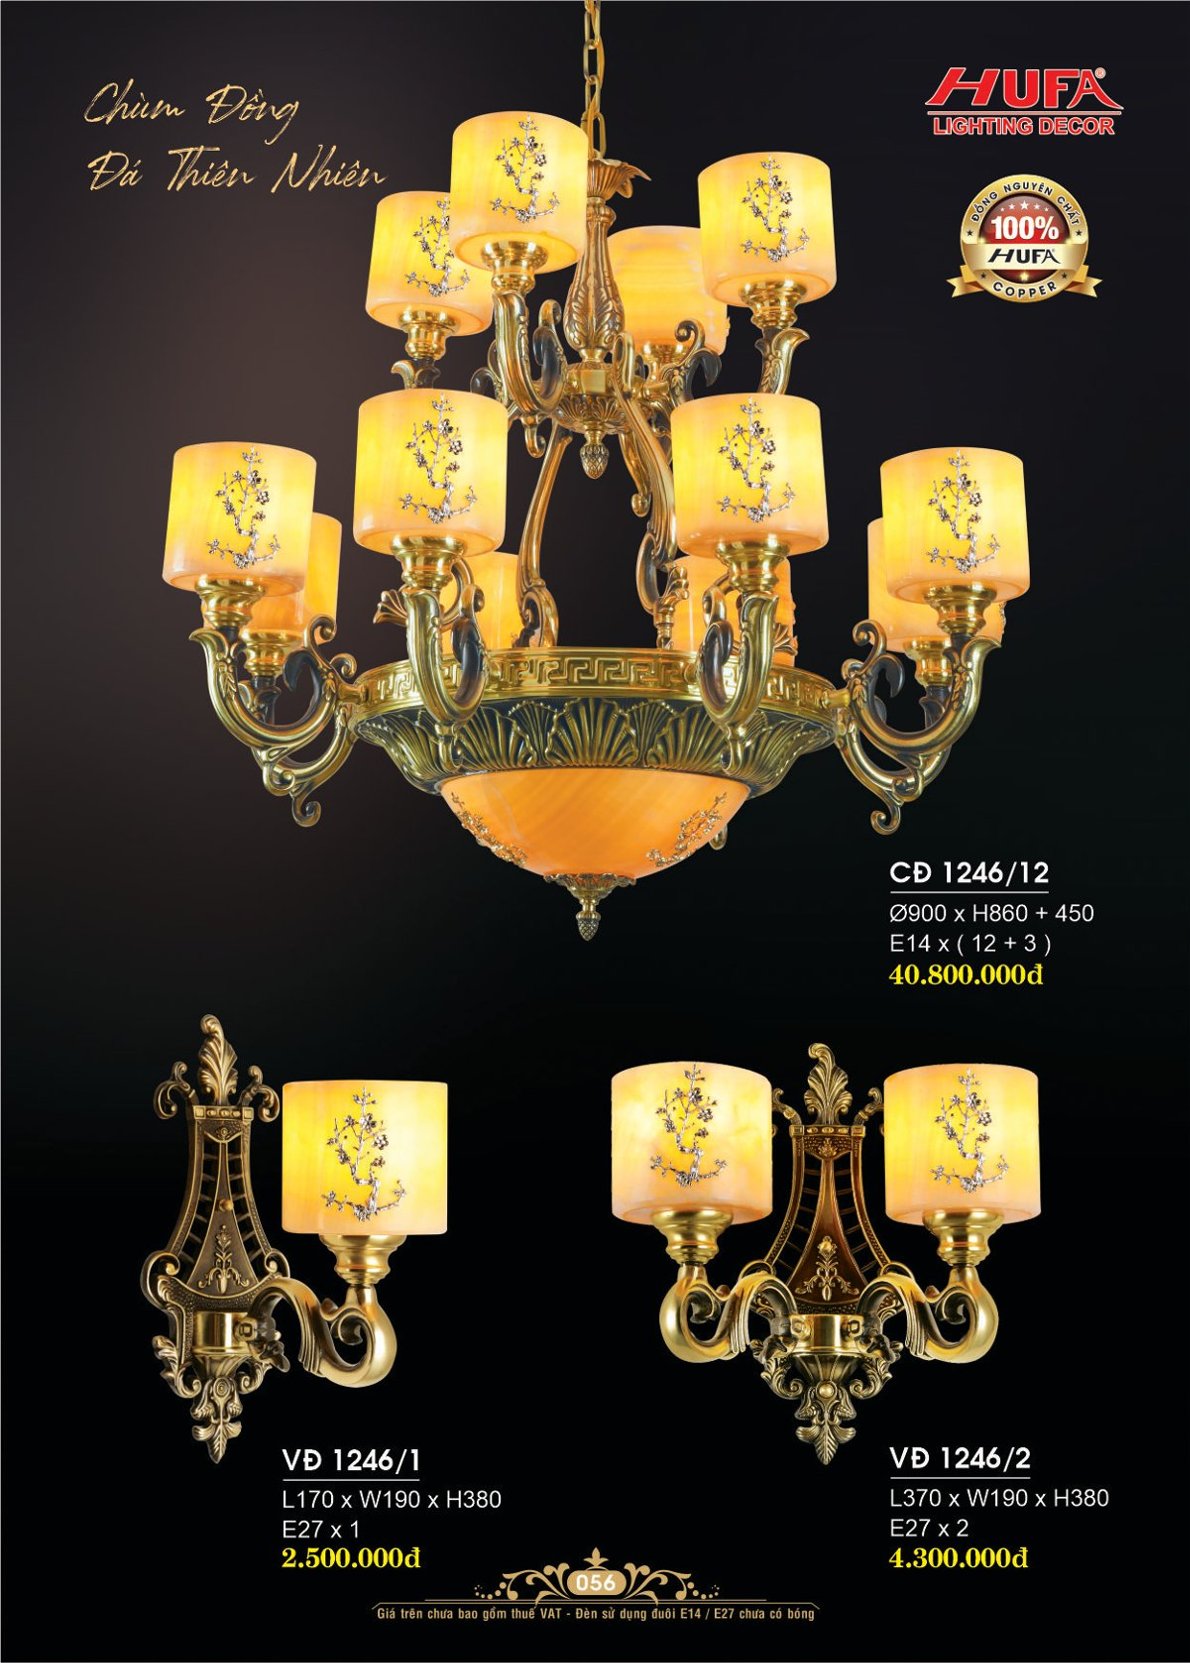 Đèn chùm đồng nguyên chất, đèn trang trí Hufa CĐ 1085/9 cao cấp, giá rẻ, bảo hành lâu dài, hỗ trợ lắp đặt, giao hàng toàn quốc. Đèn chùm đồng Hufa được bảo trì trọn đời.